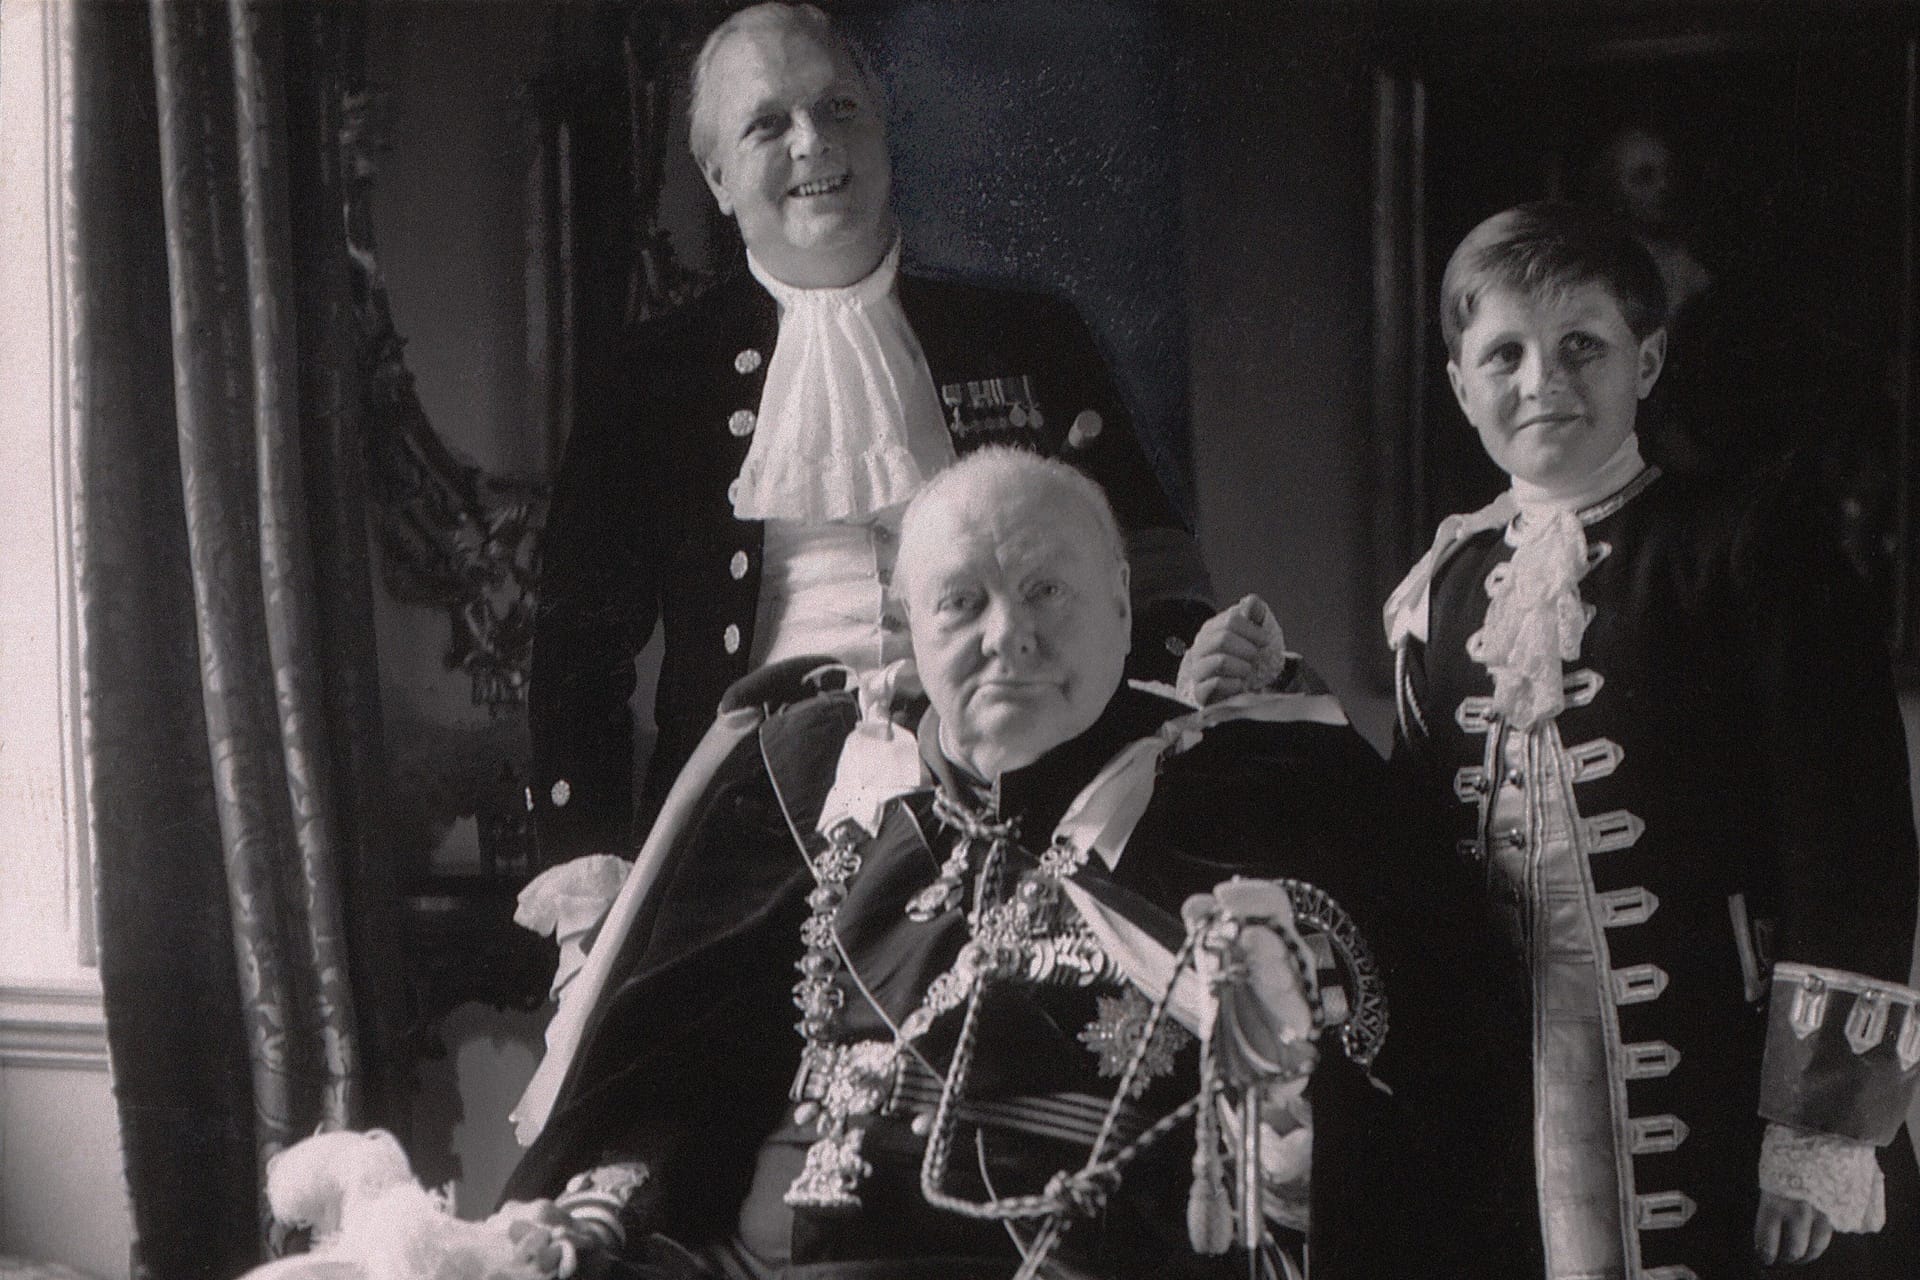 Zu Gast war auch der damalige britische Premierminister Winston Churchill mit seinem Sohn und seinem Enkel.